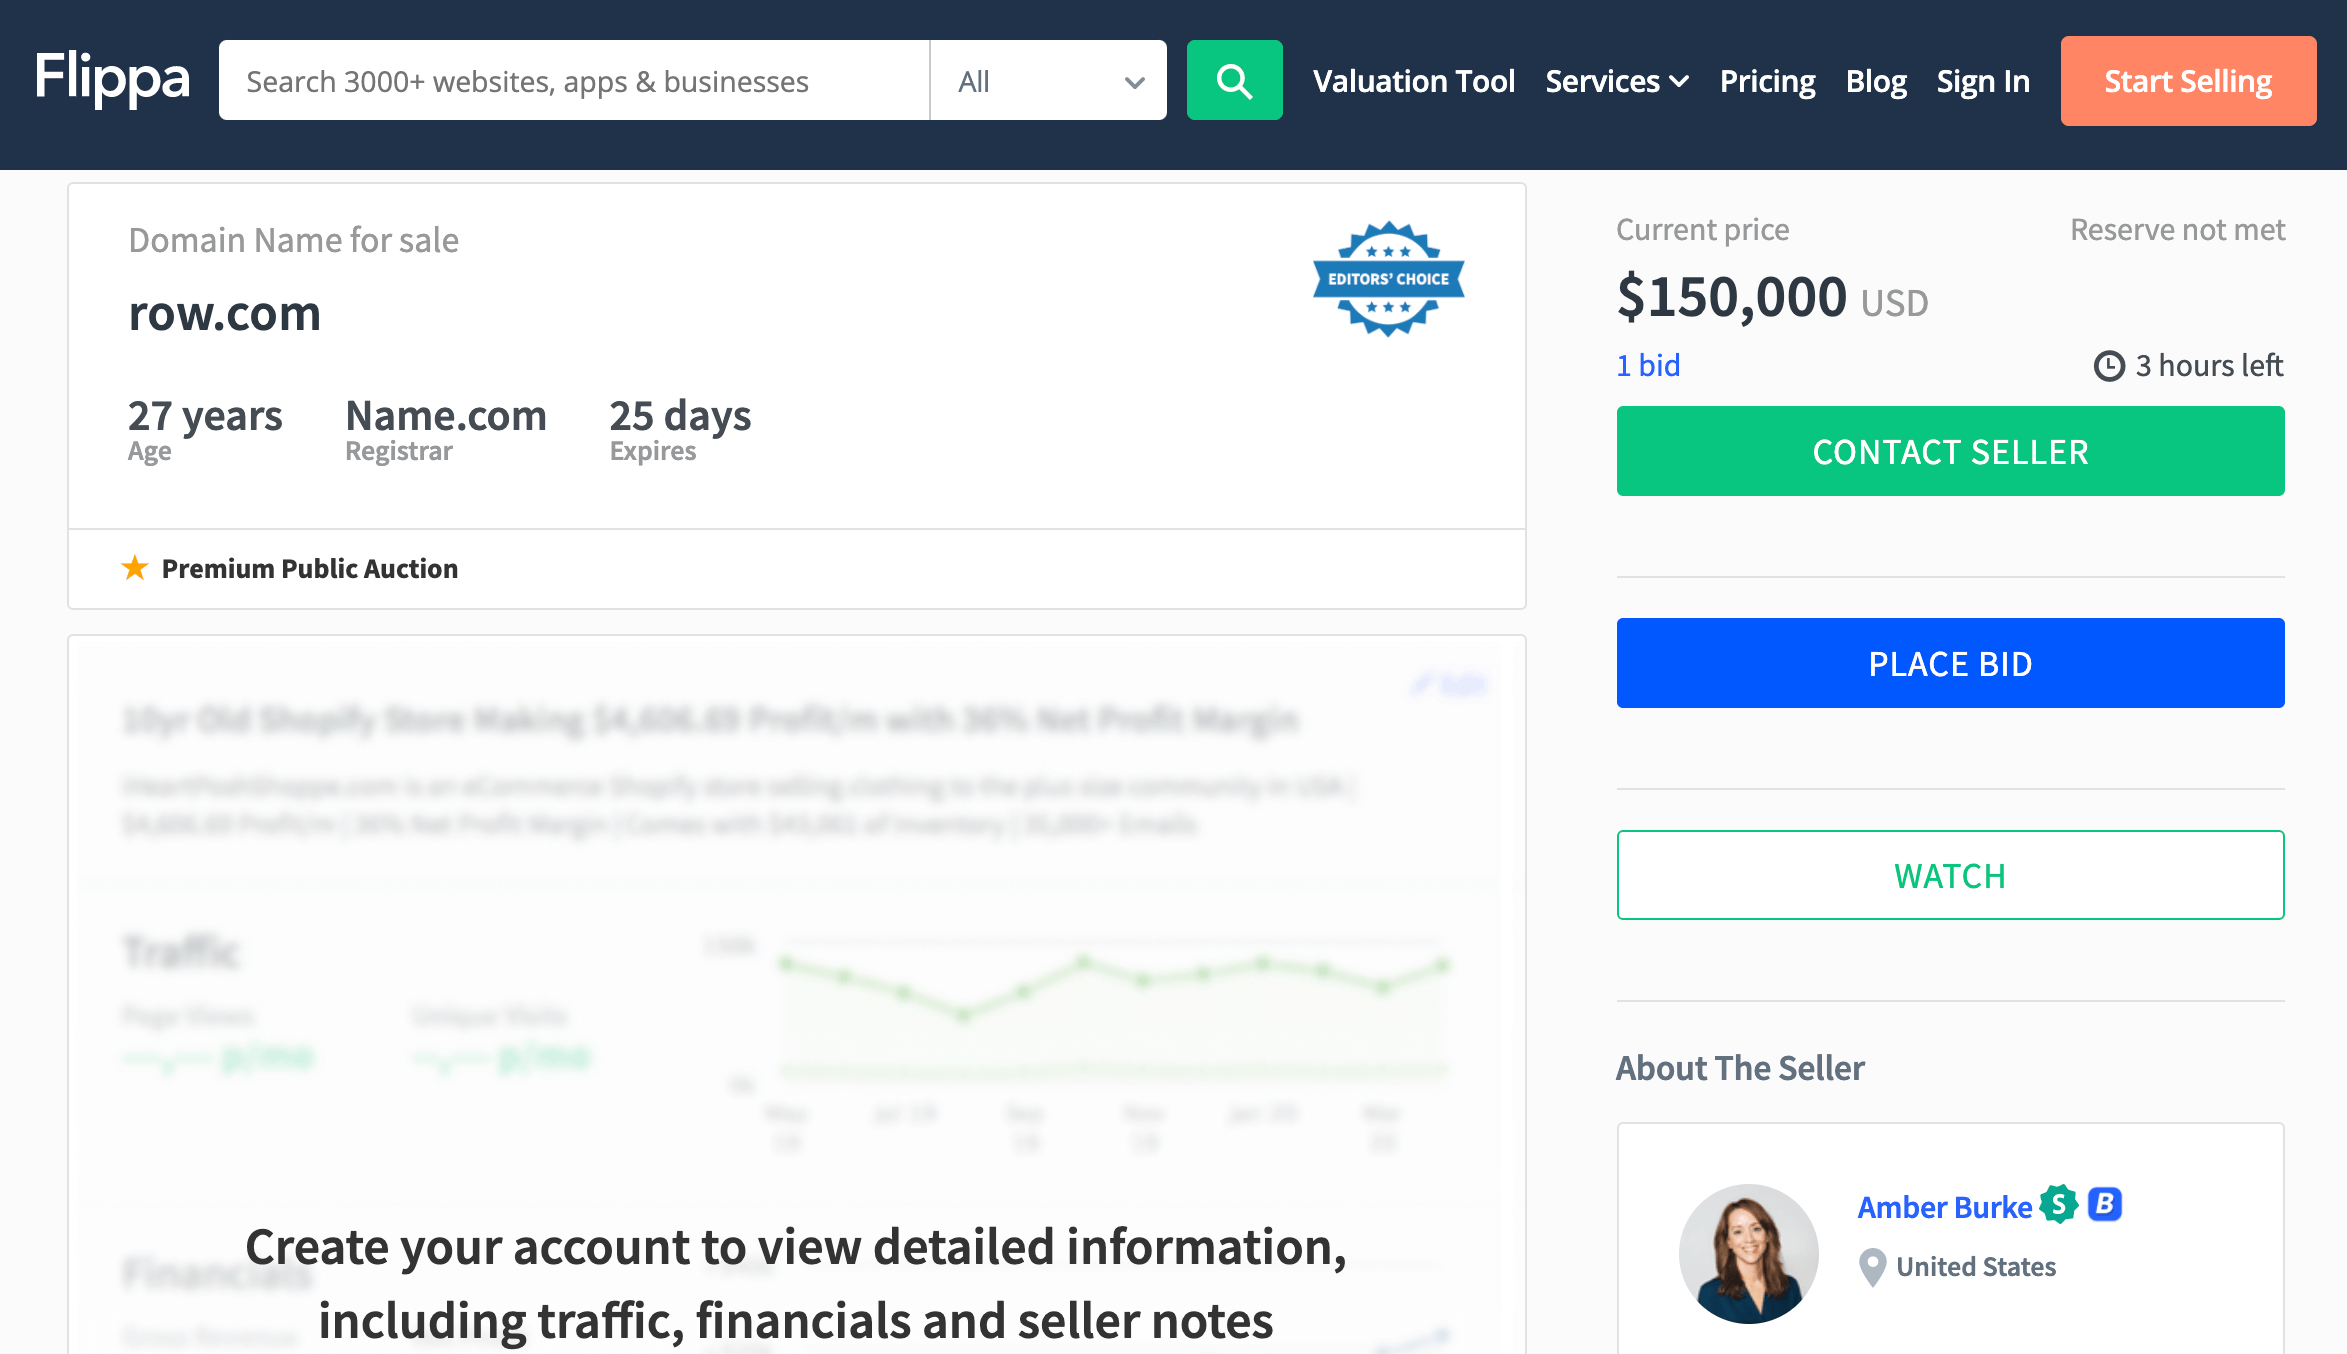 ROW.com hits $150k on Flippa